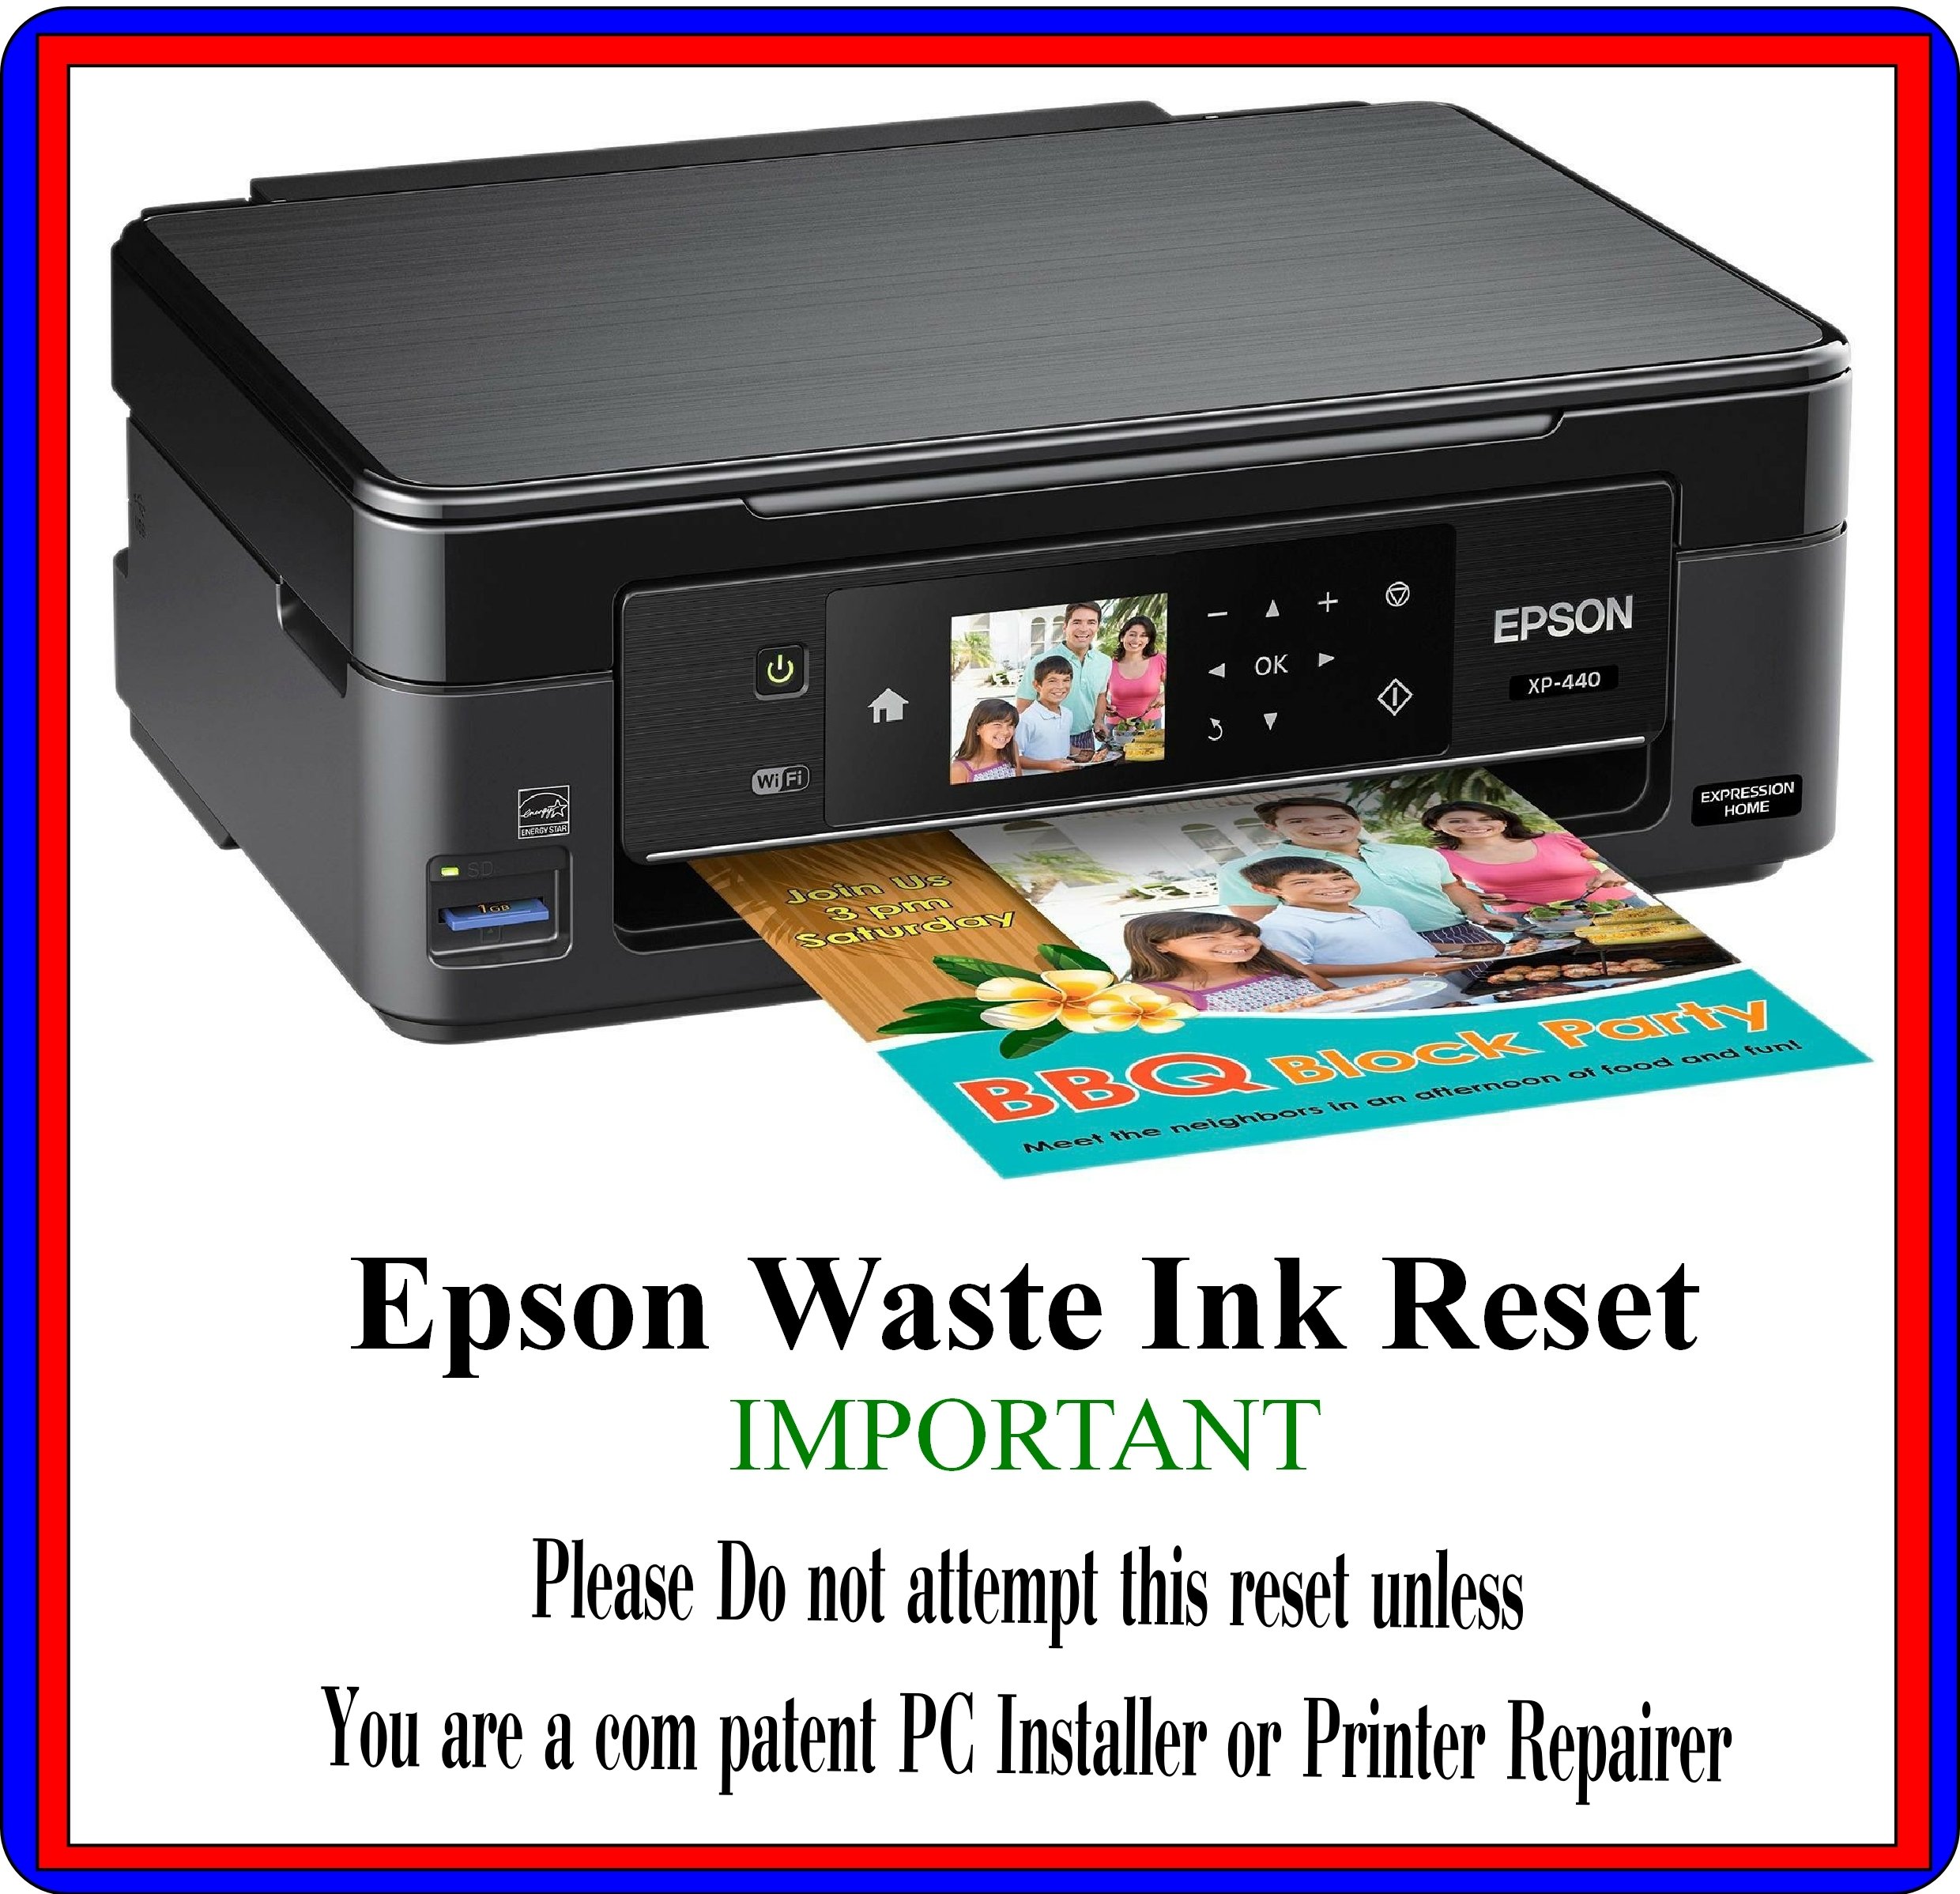 Waste ink reset key generator free